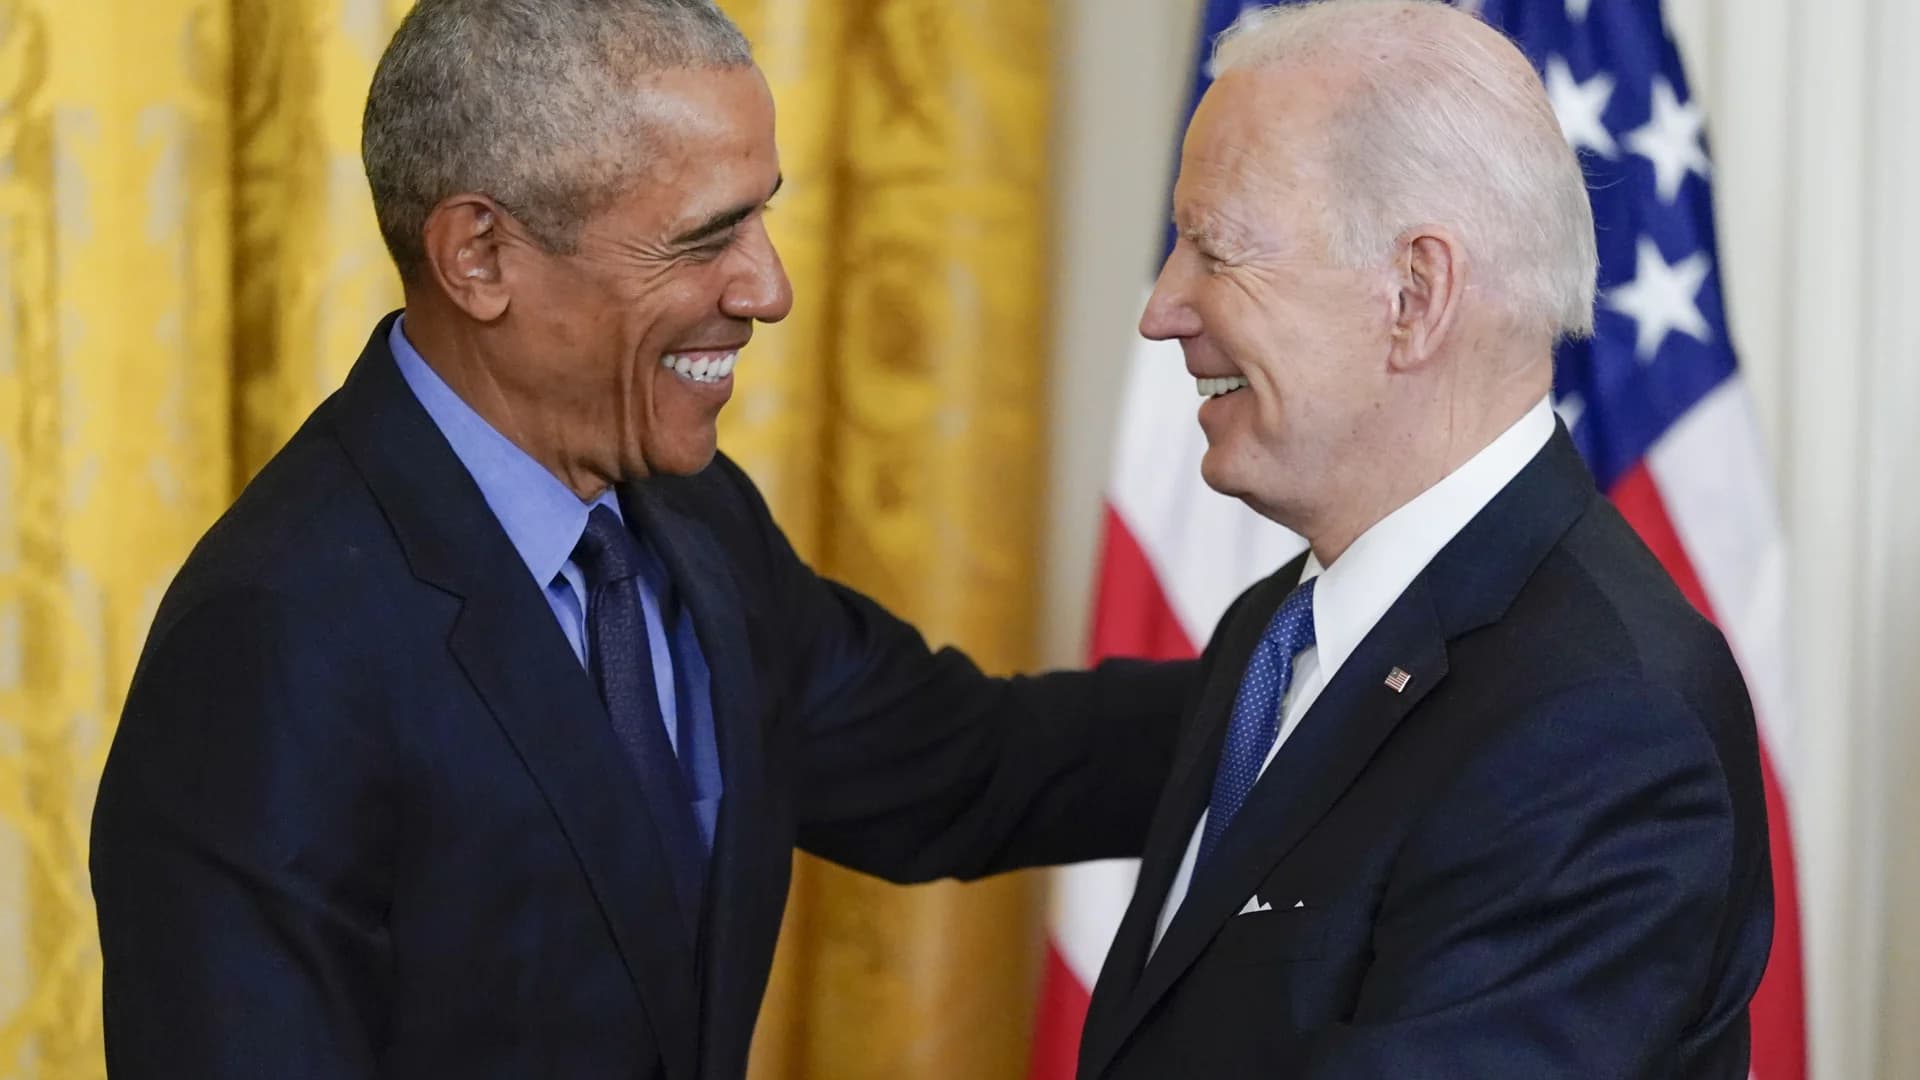 Biden, Obama mark 12 years under Obama's health care law